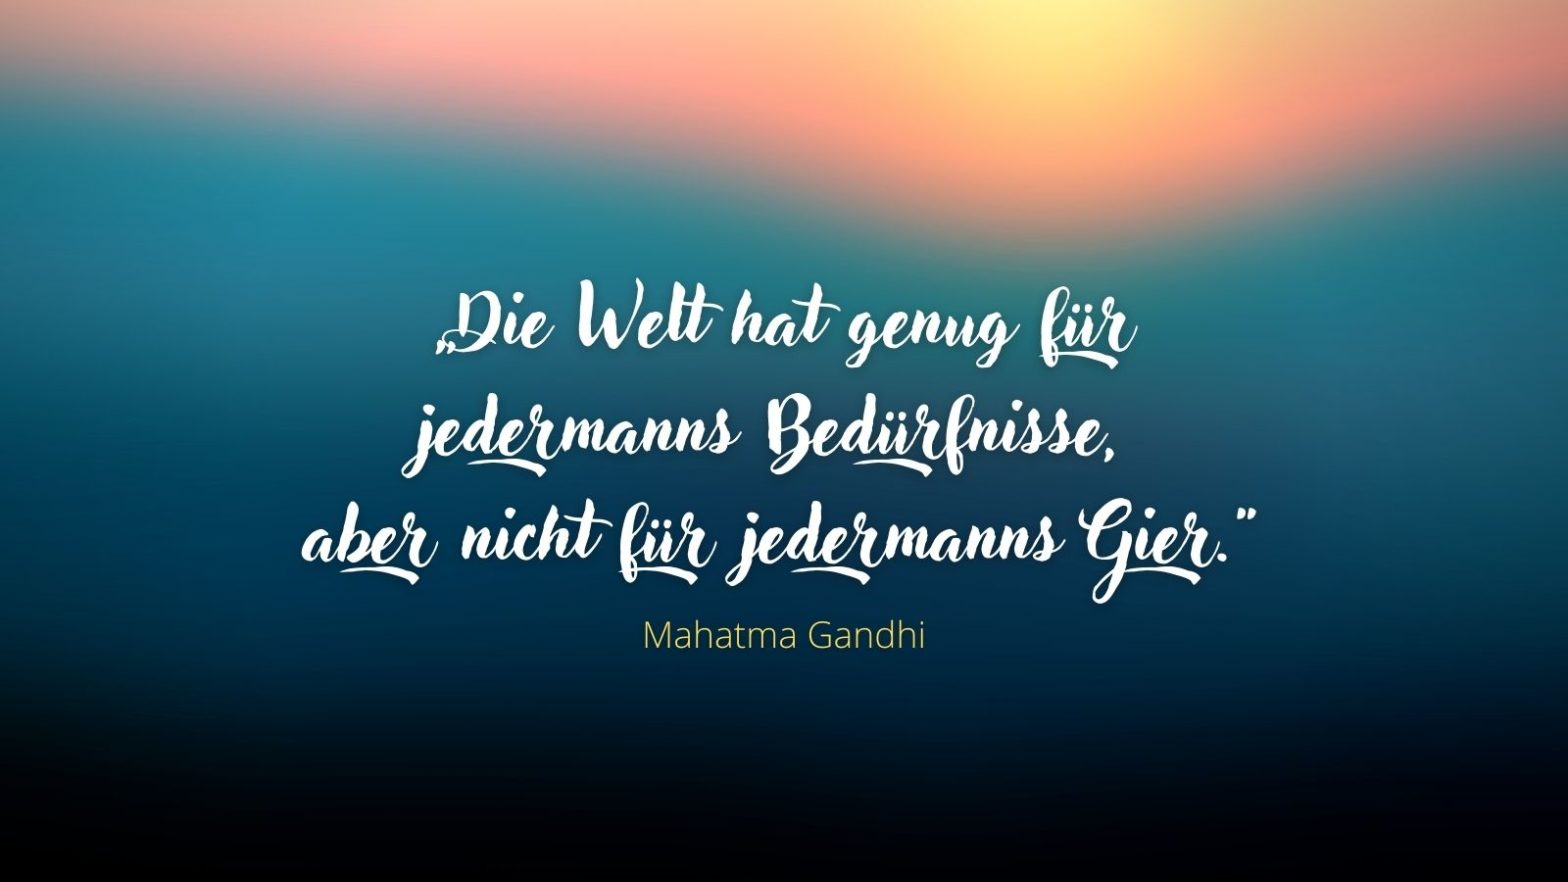 "Die Welt hat genug für jedermanns Bedürfnisse, aber nicht für jedermanns Gier." - Mahatma Gandhi